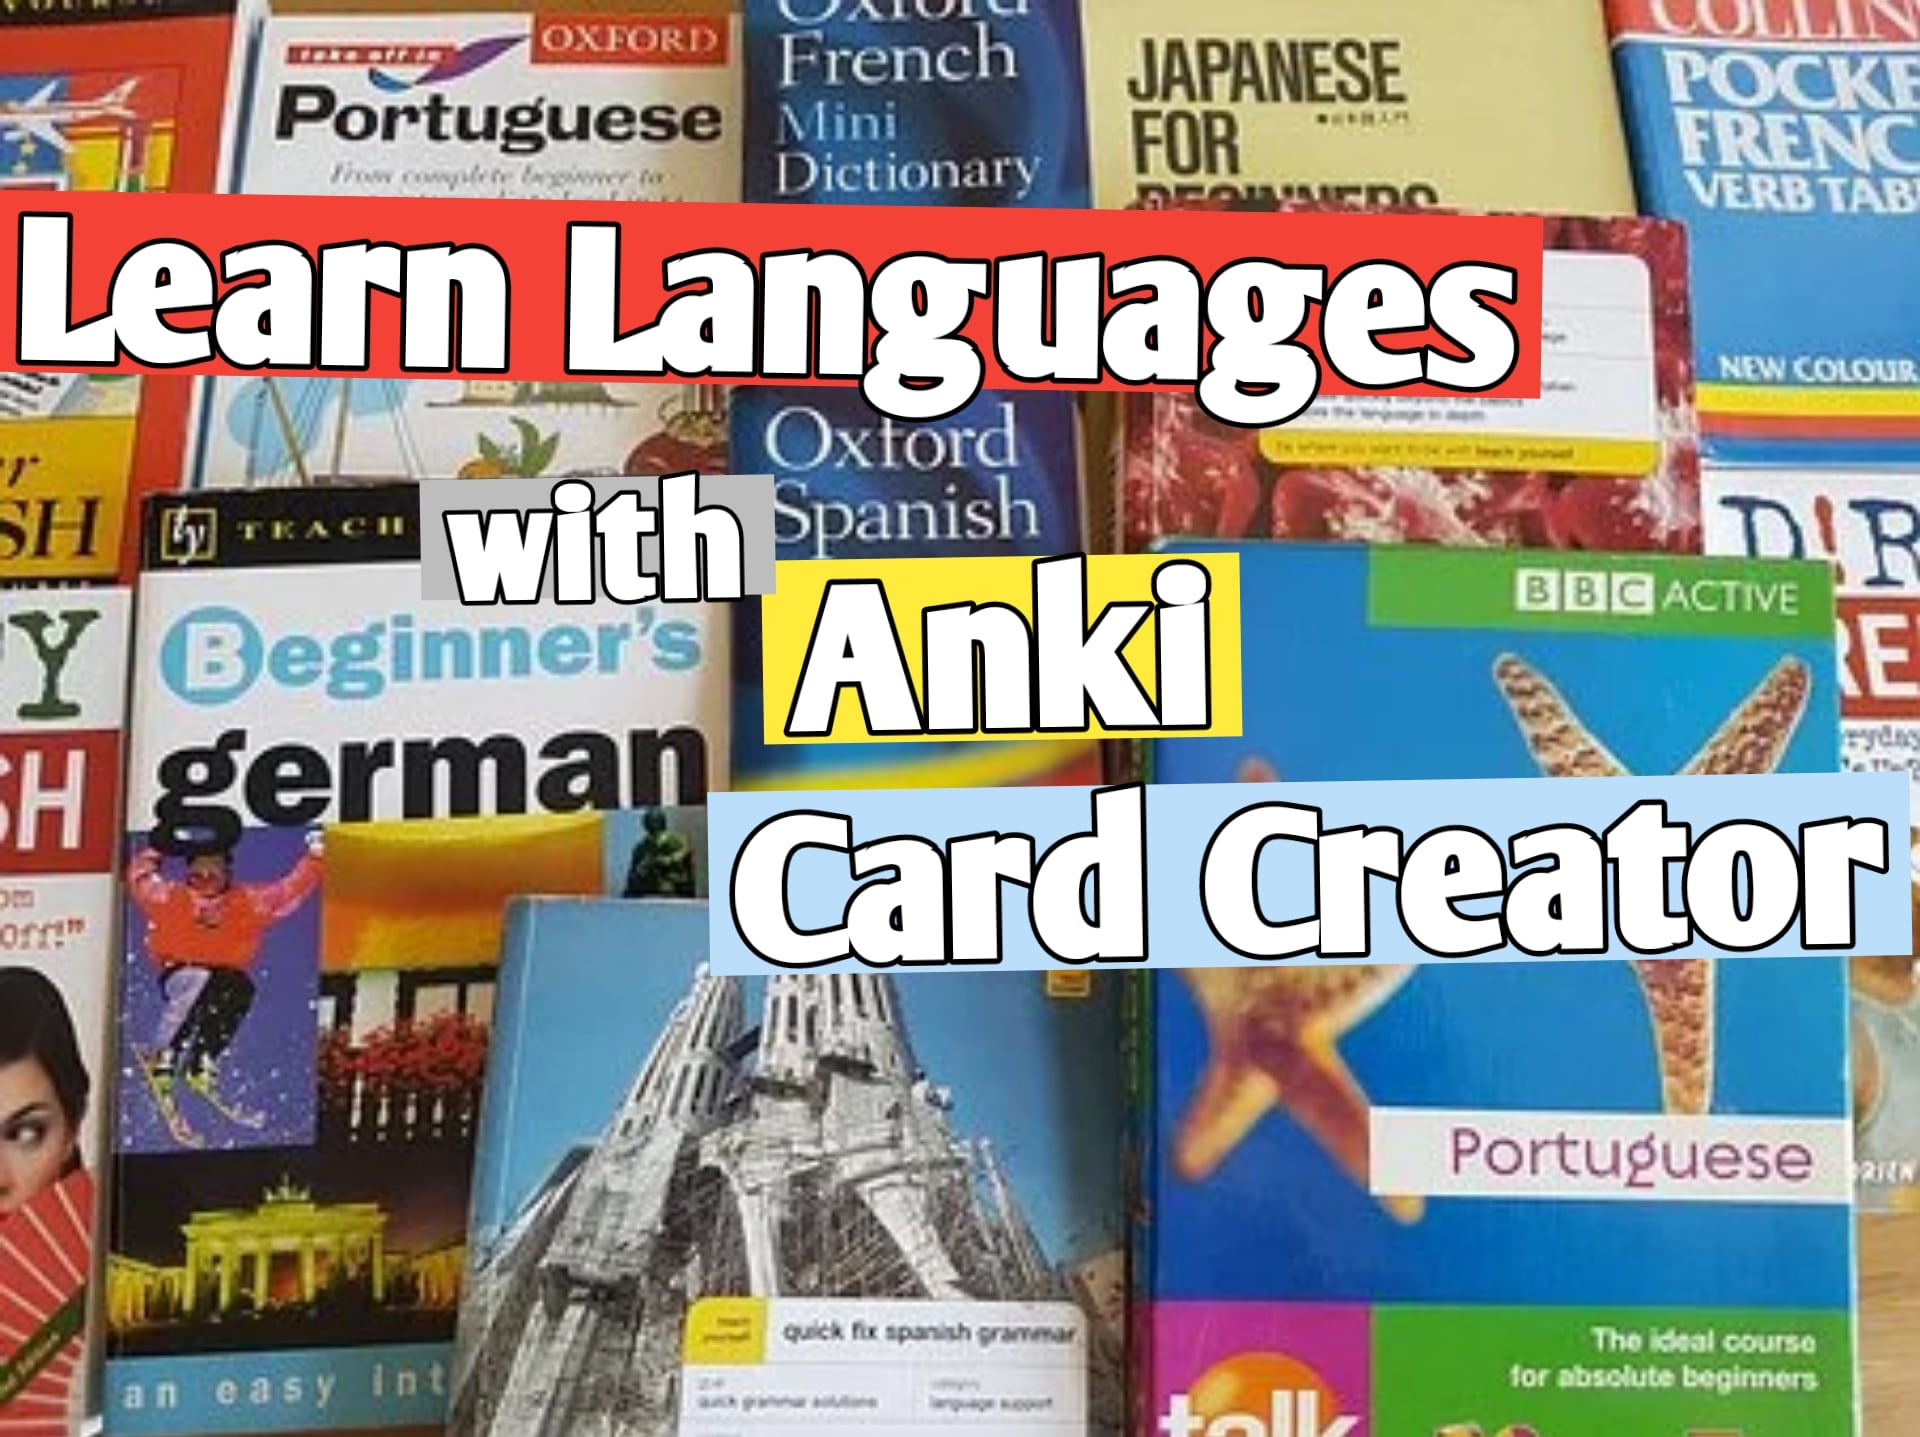 Automatic Anki Card Creator